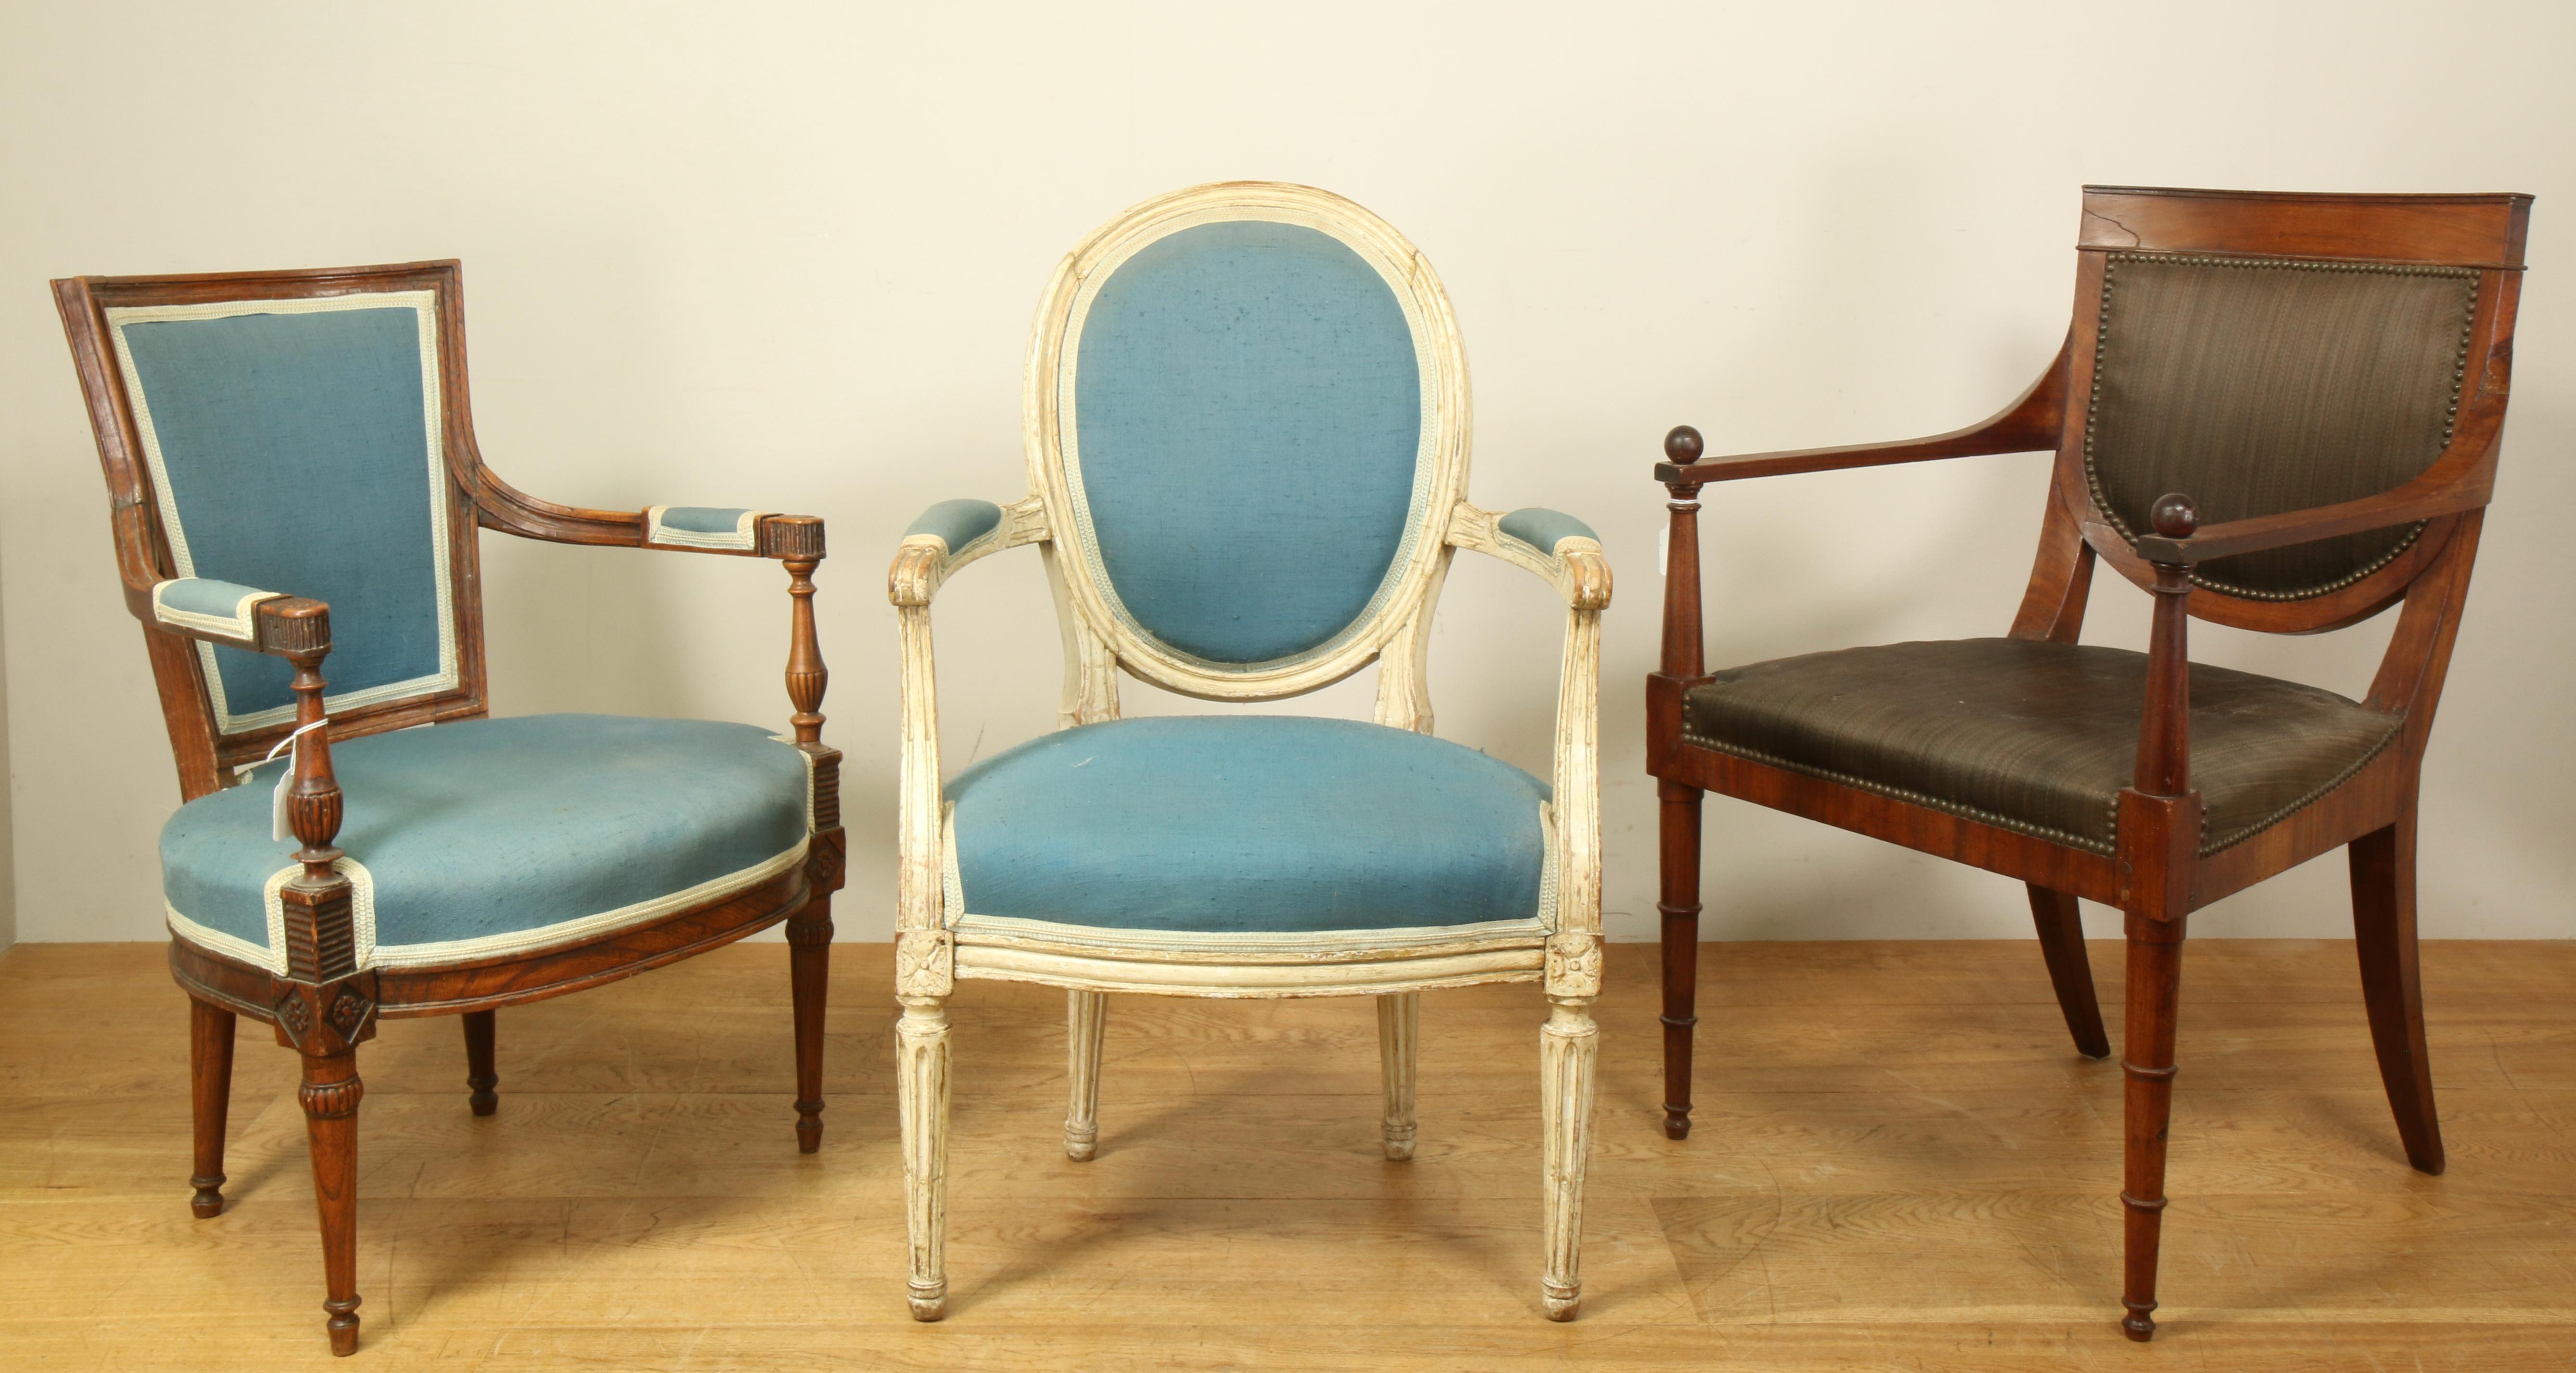 Wit gelakt beukenhouten medallionfauteuil in Louis XVI-stijl, 19e eeuw, mahoniehouten fauteuil, 19e